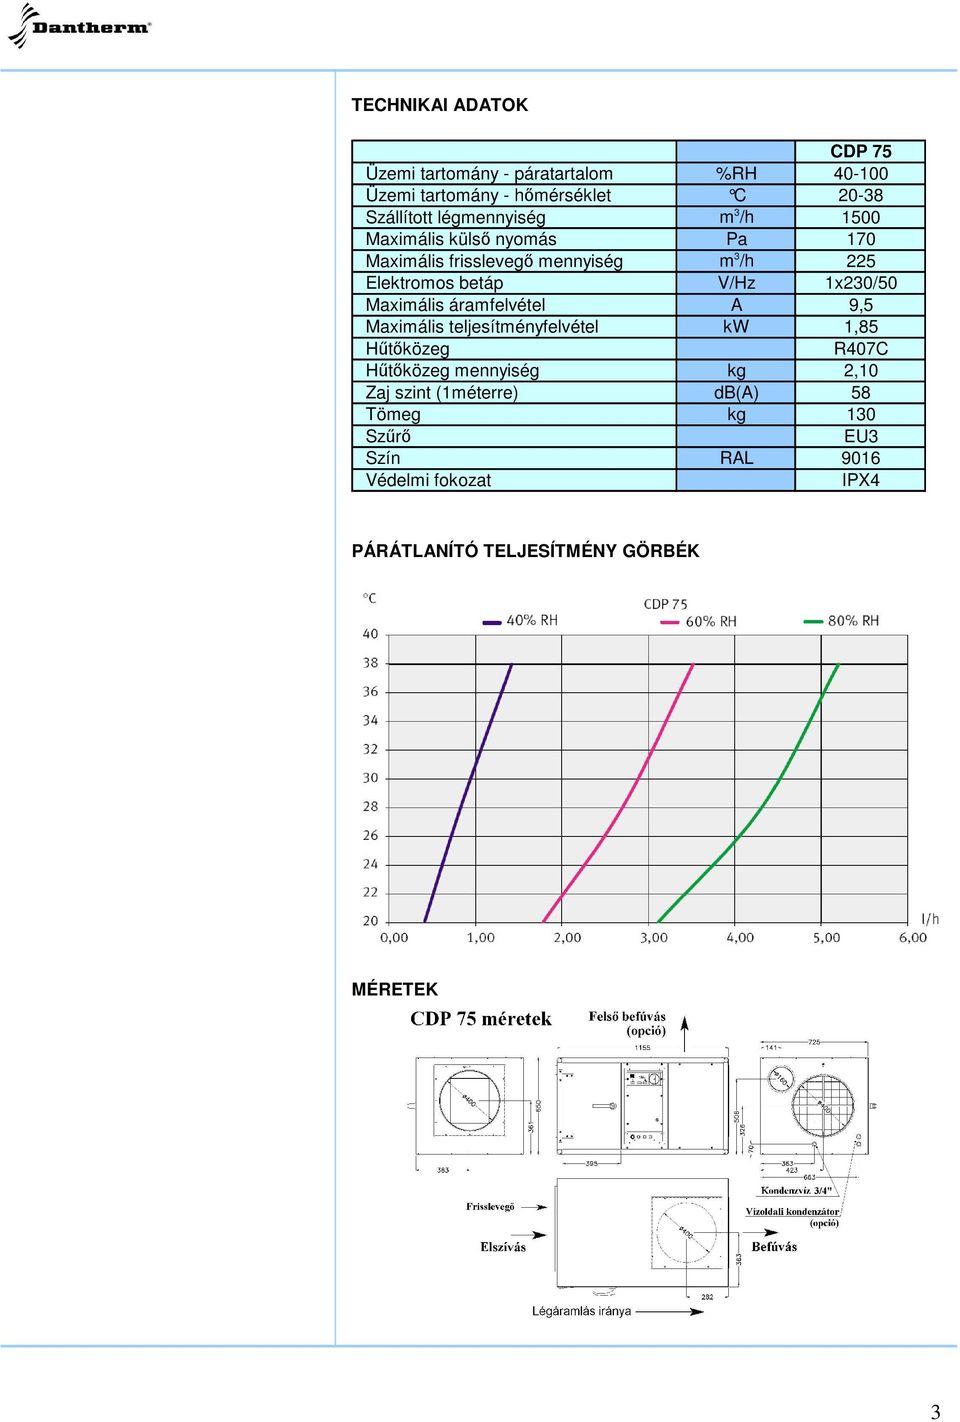 1x230/50 Maximális áramfelvétel A 9,5 Maximális teljesítményfelvétel kw 1,85 Htközeg R407C Htközeg mennyiség kg 2,10